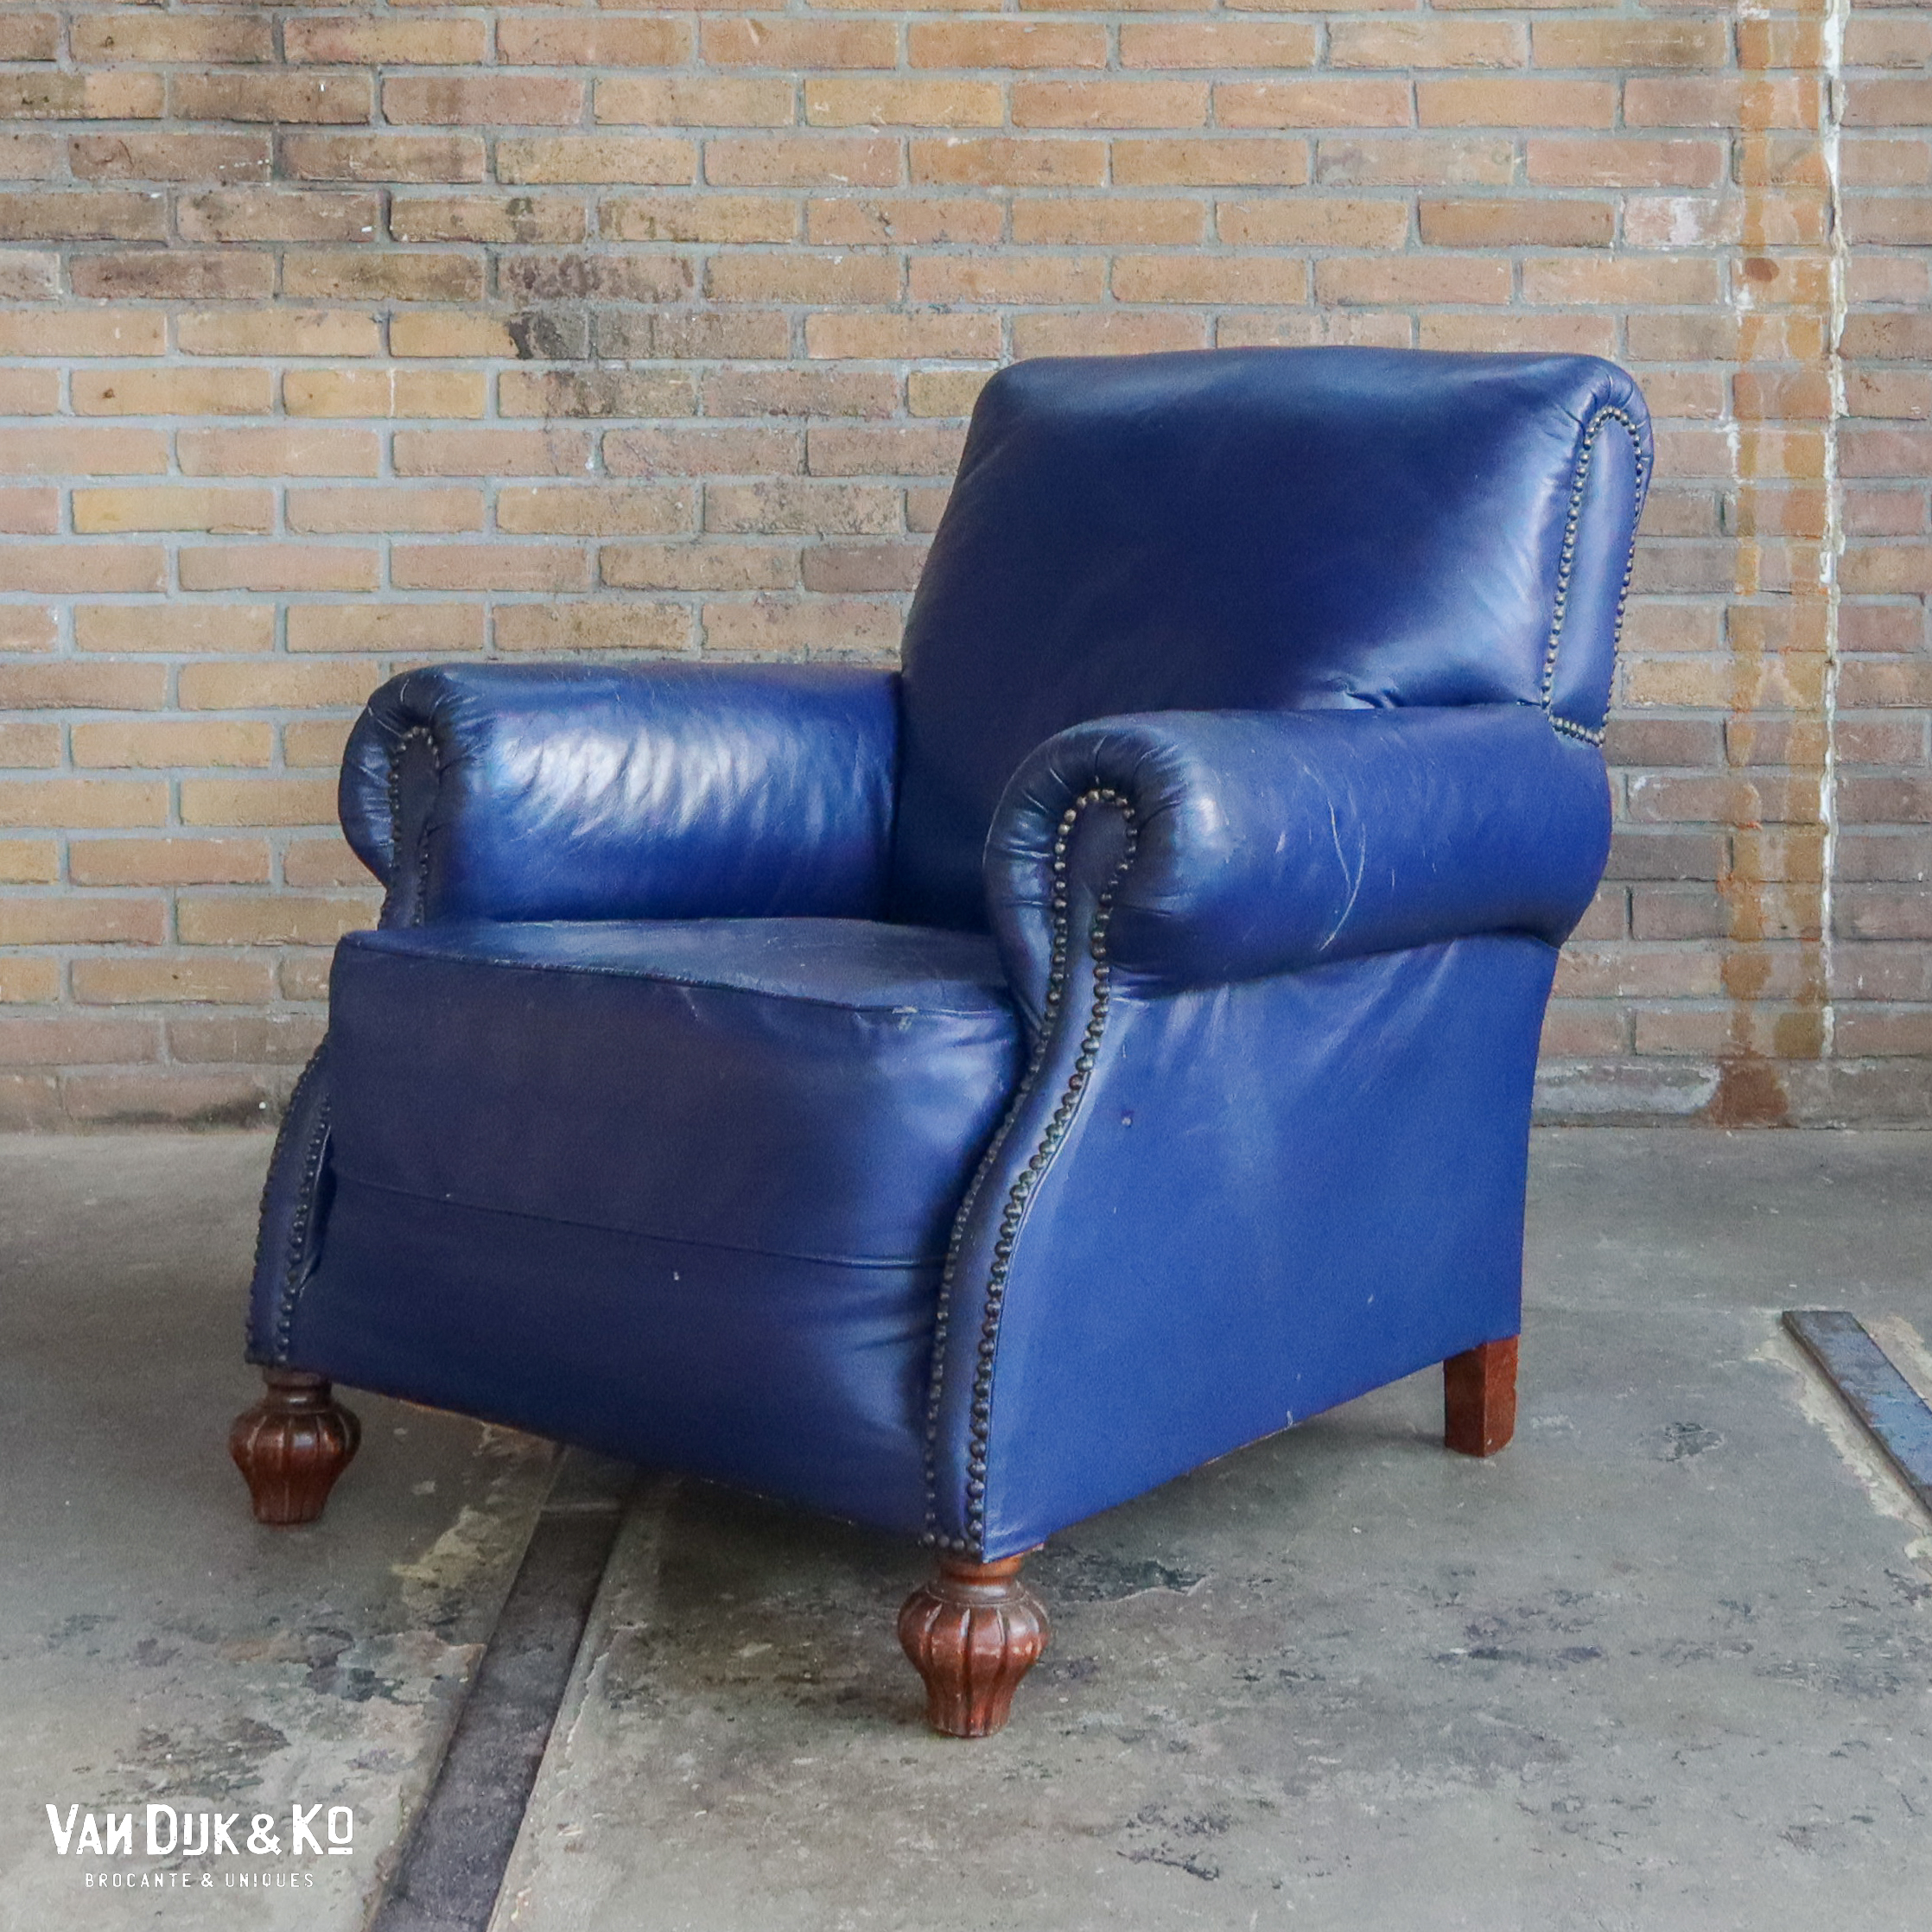 Voorschrijven plank duisternis Vintage leren fauteuil – Chesterfield » Van Dijk & Ko